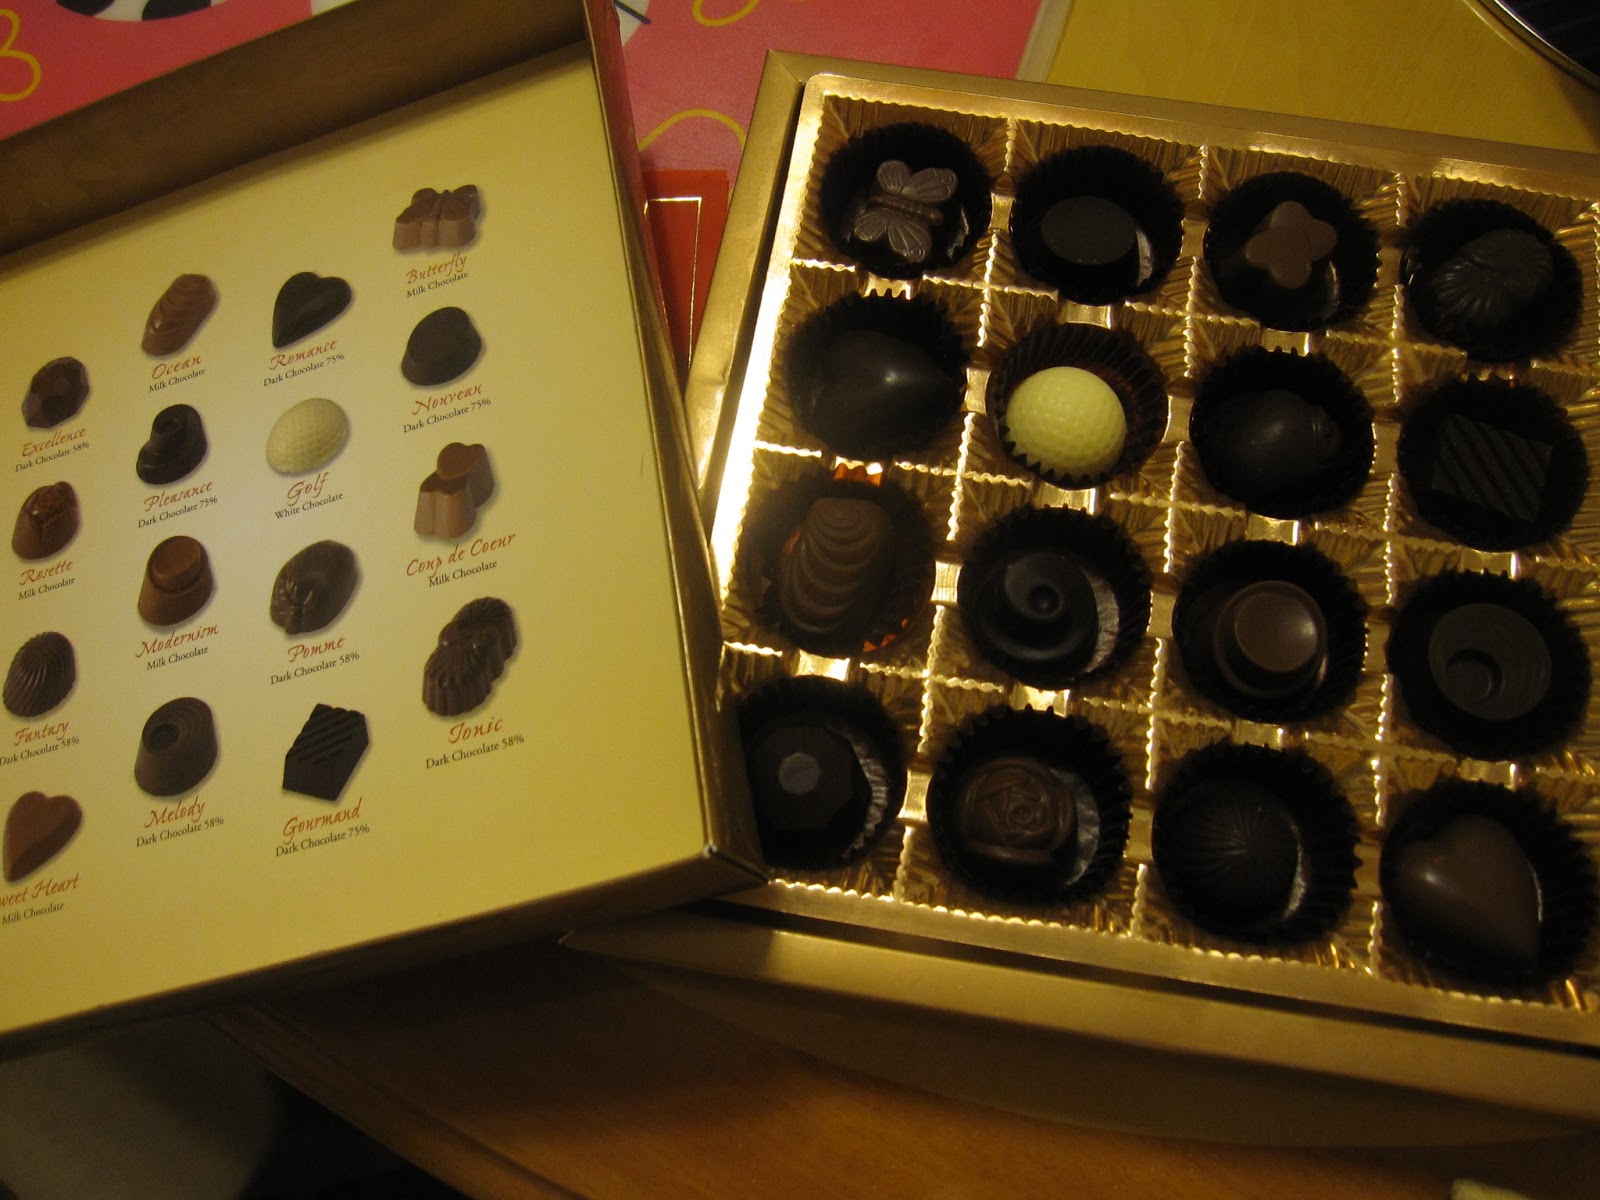 manman journal: Free Box of Chocolates